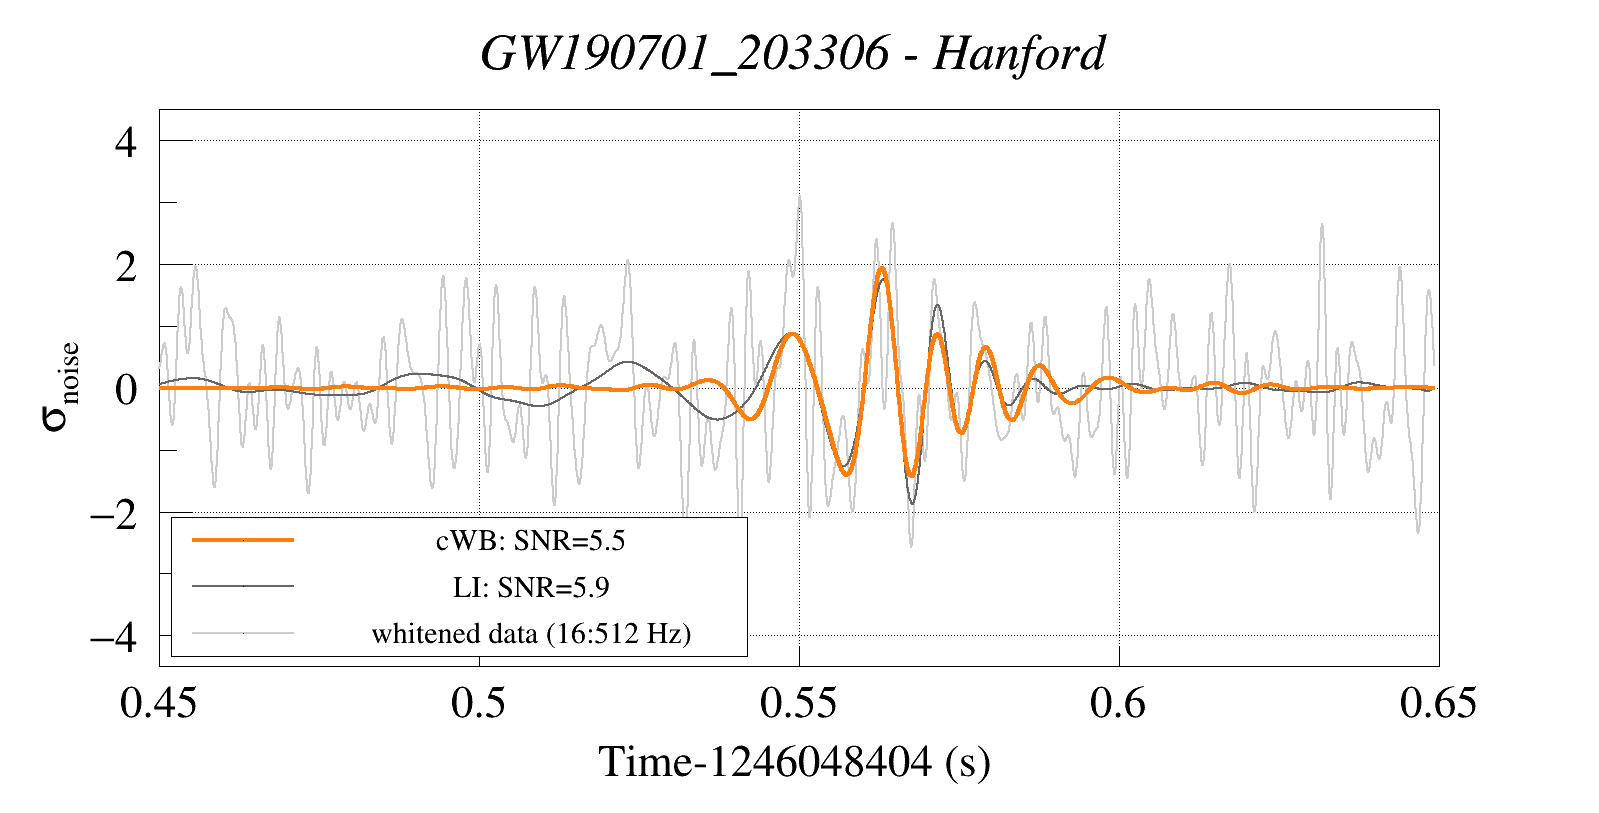 Waveform Reconstruction for GW190701_203306